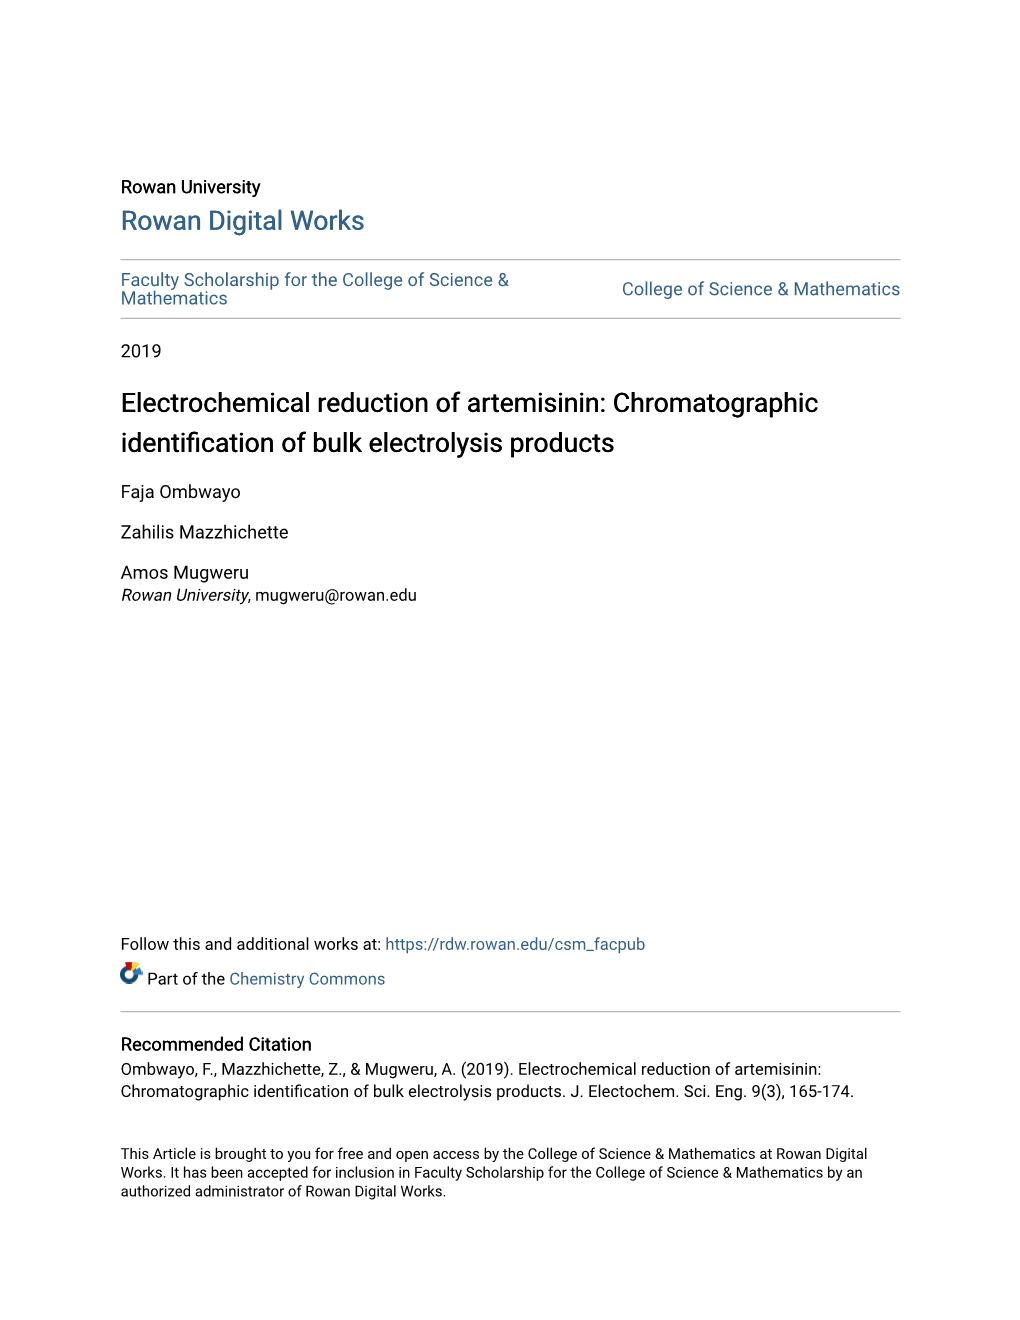 Chromatographic Identification of Bulk Electrolysis Products